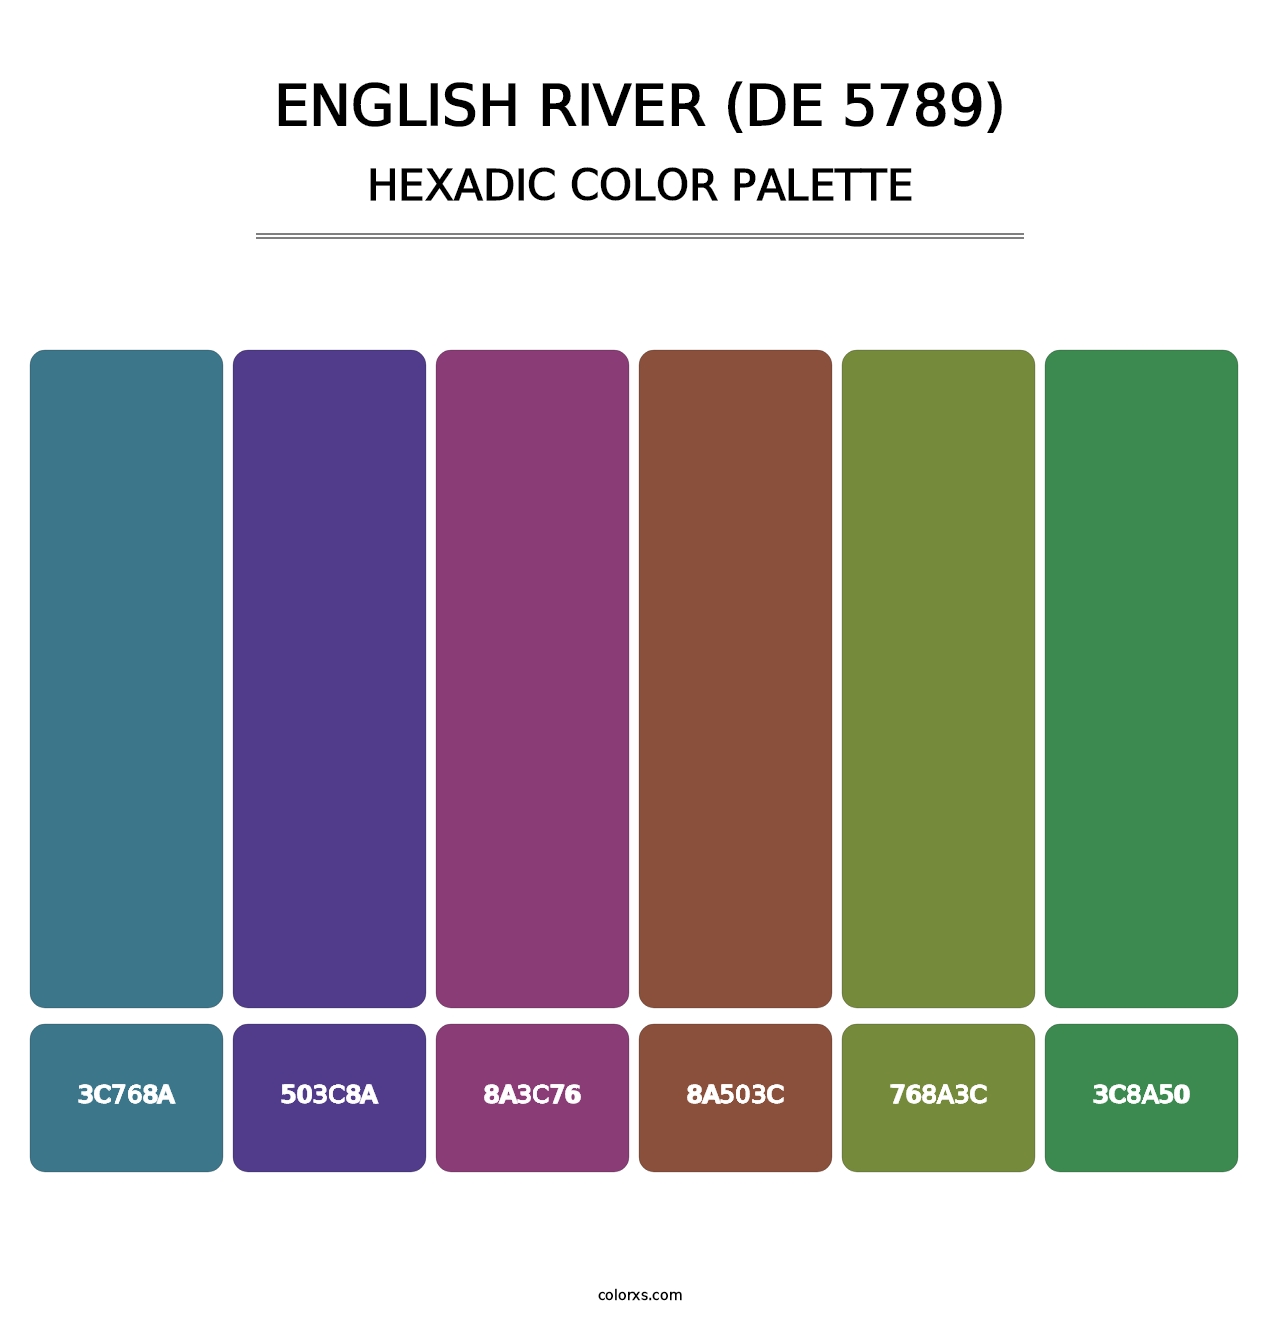 English River (DE 5789) - Hexadic Color Palette